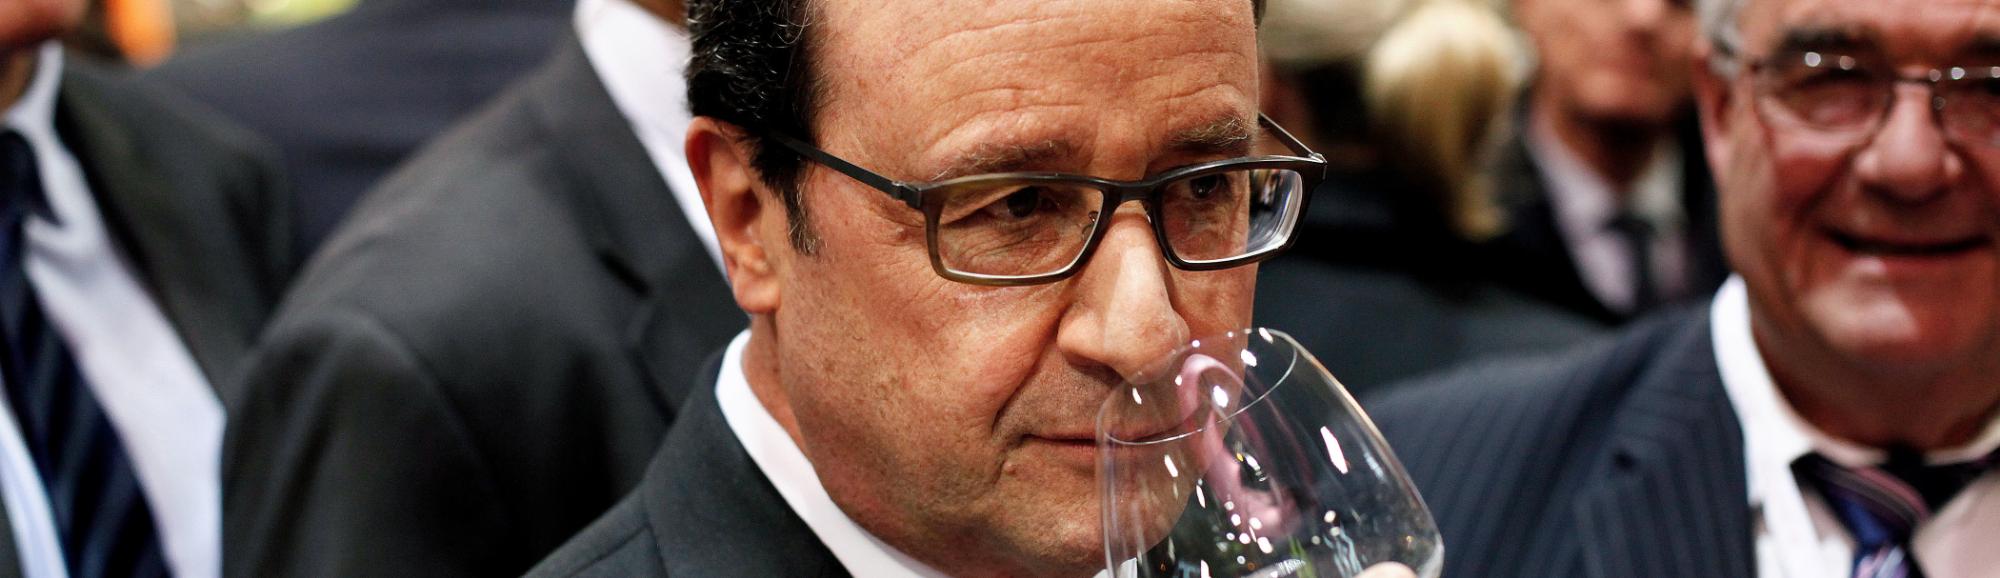 Presidente François Hollande em meio a outras pessoas de terno, ele segura uma taça de vinho junto ao seu nariz,